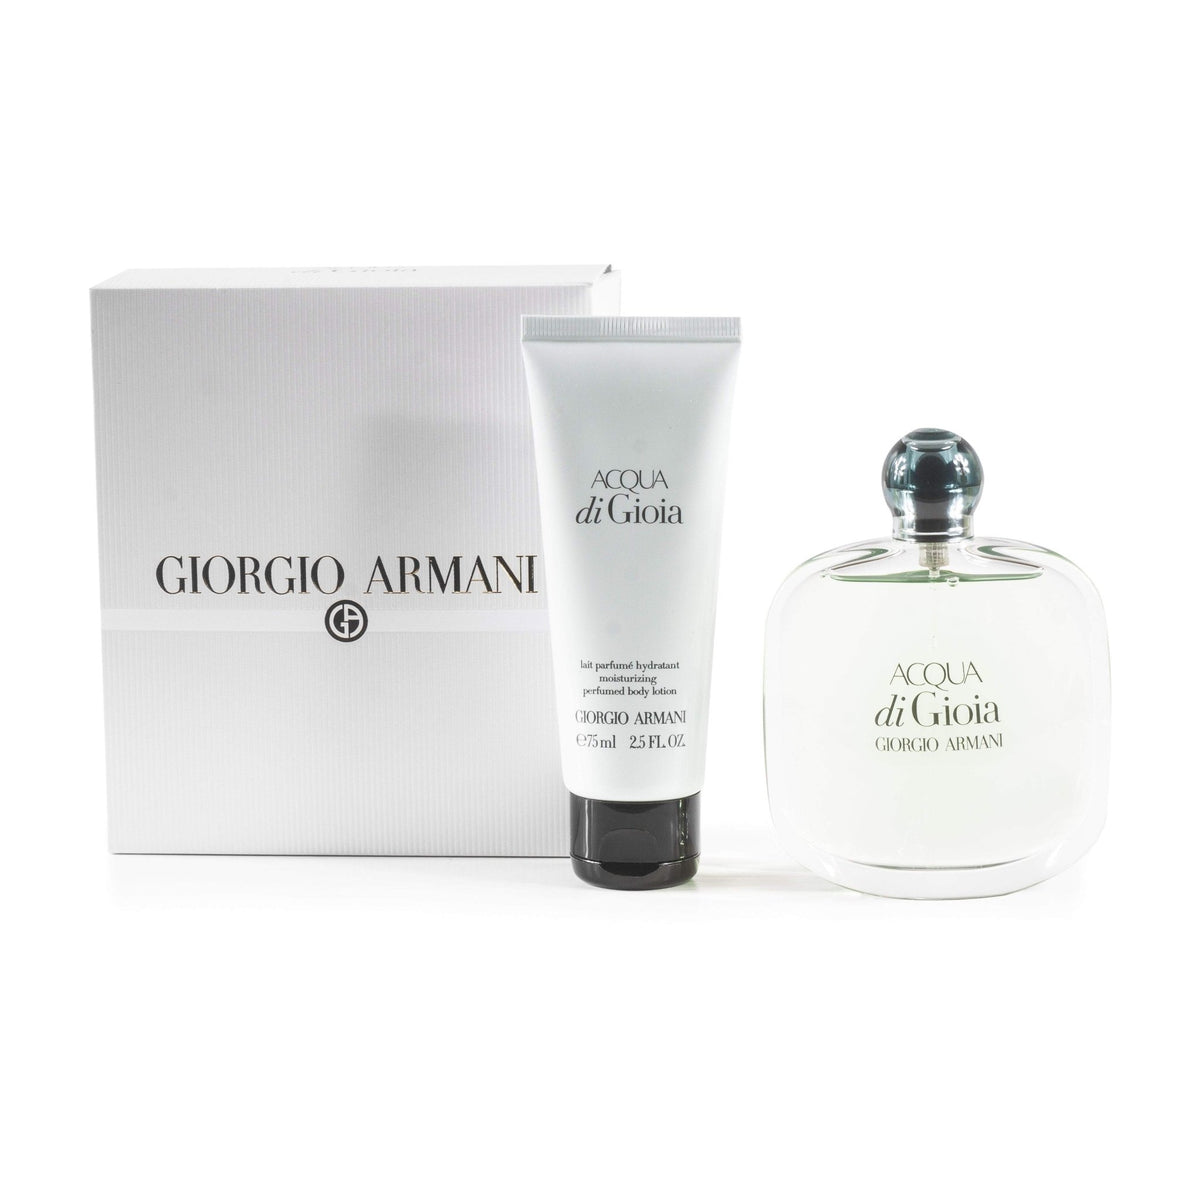 Acqua Di Gioia Gift Set for Women by Giorgio Armani 3.4 oz.